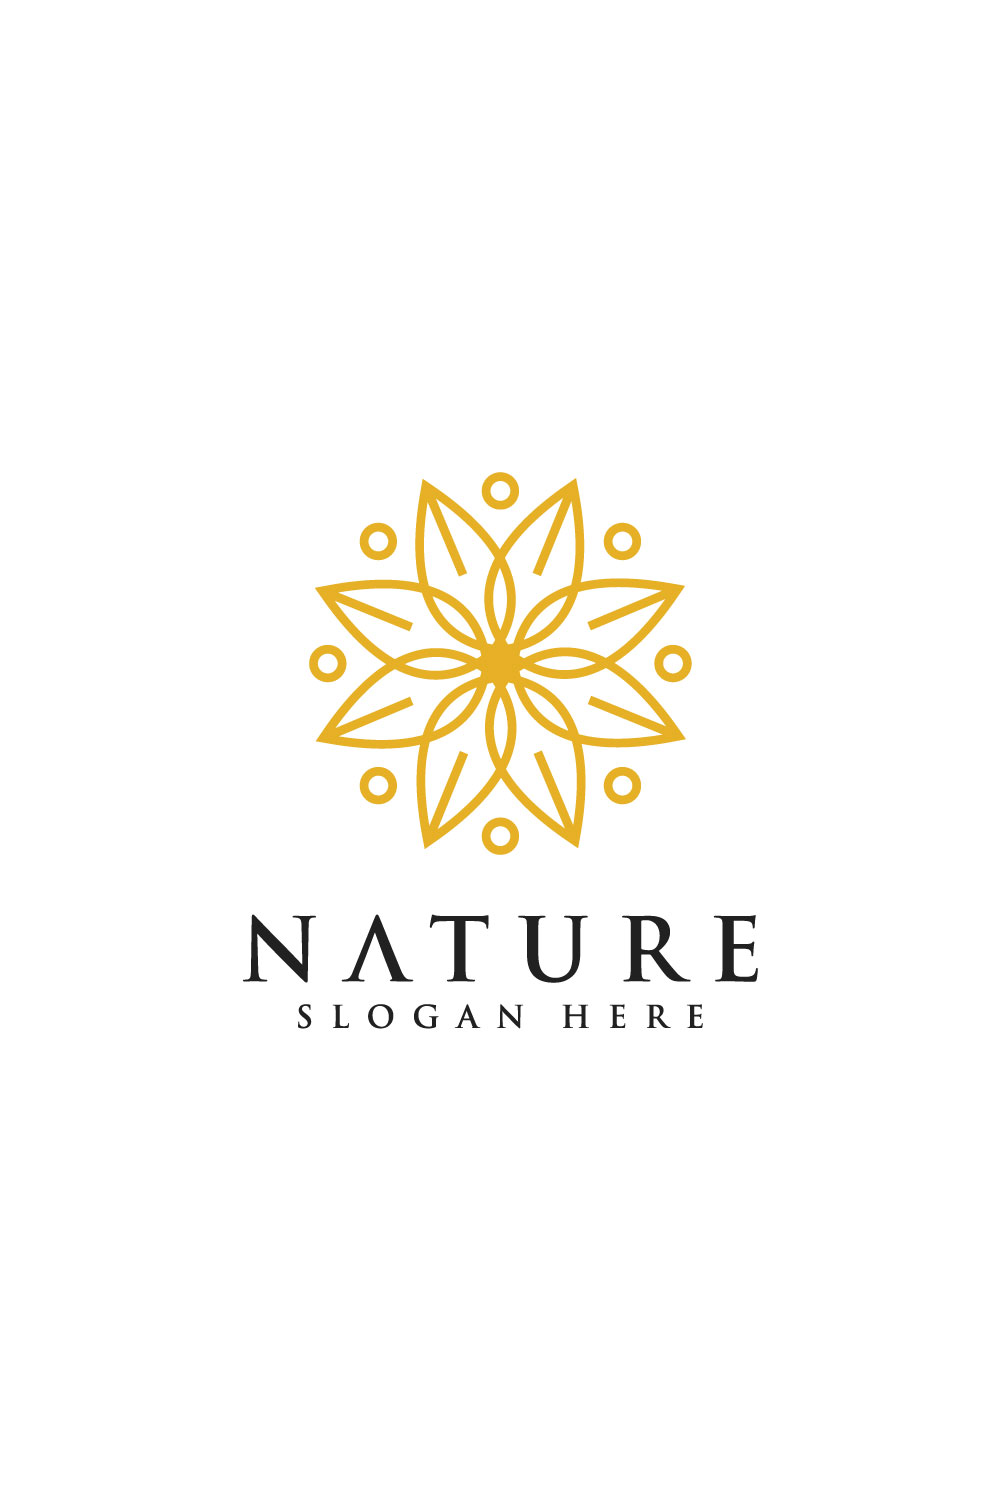 Nature Flower Logo Design Pinterest.